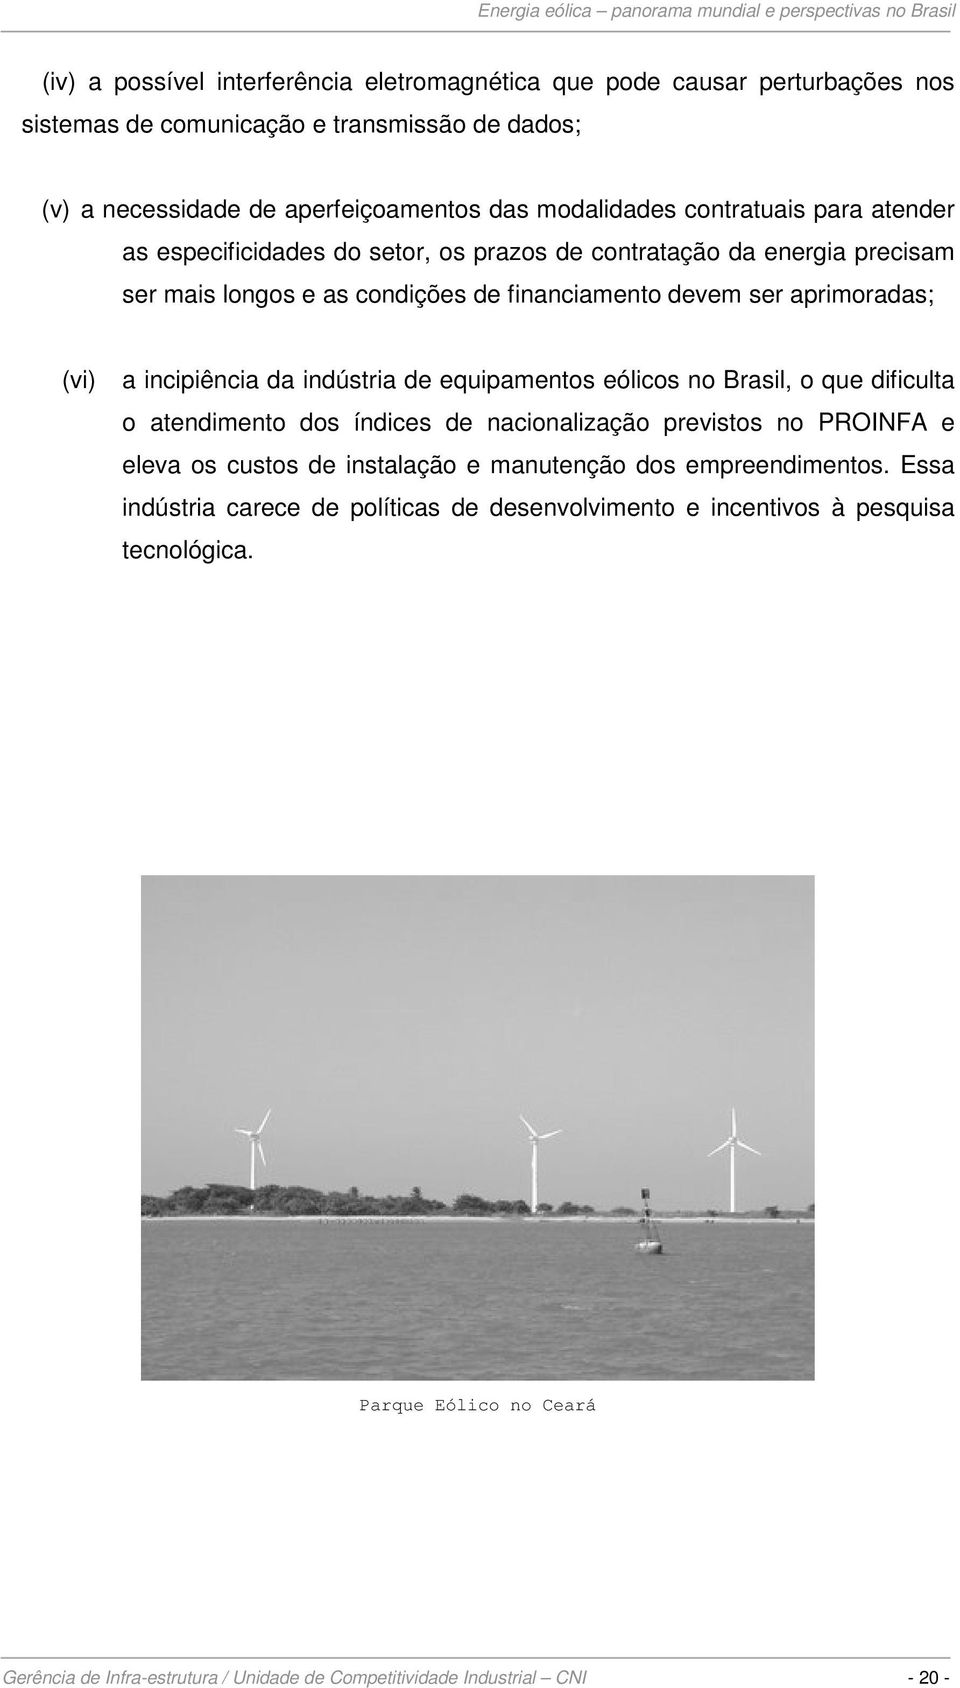 da indústria de equipamentos eólicos no Brasil, o que dificulta o atendimento dos índices de nacionalização previstos no PROINFA e eleva os custos de instalação e manutenção dos